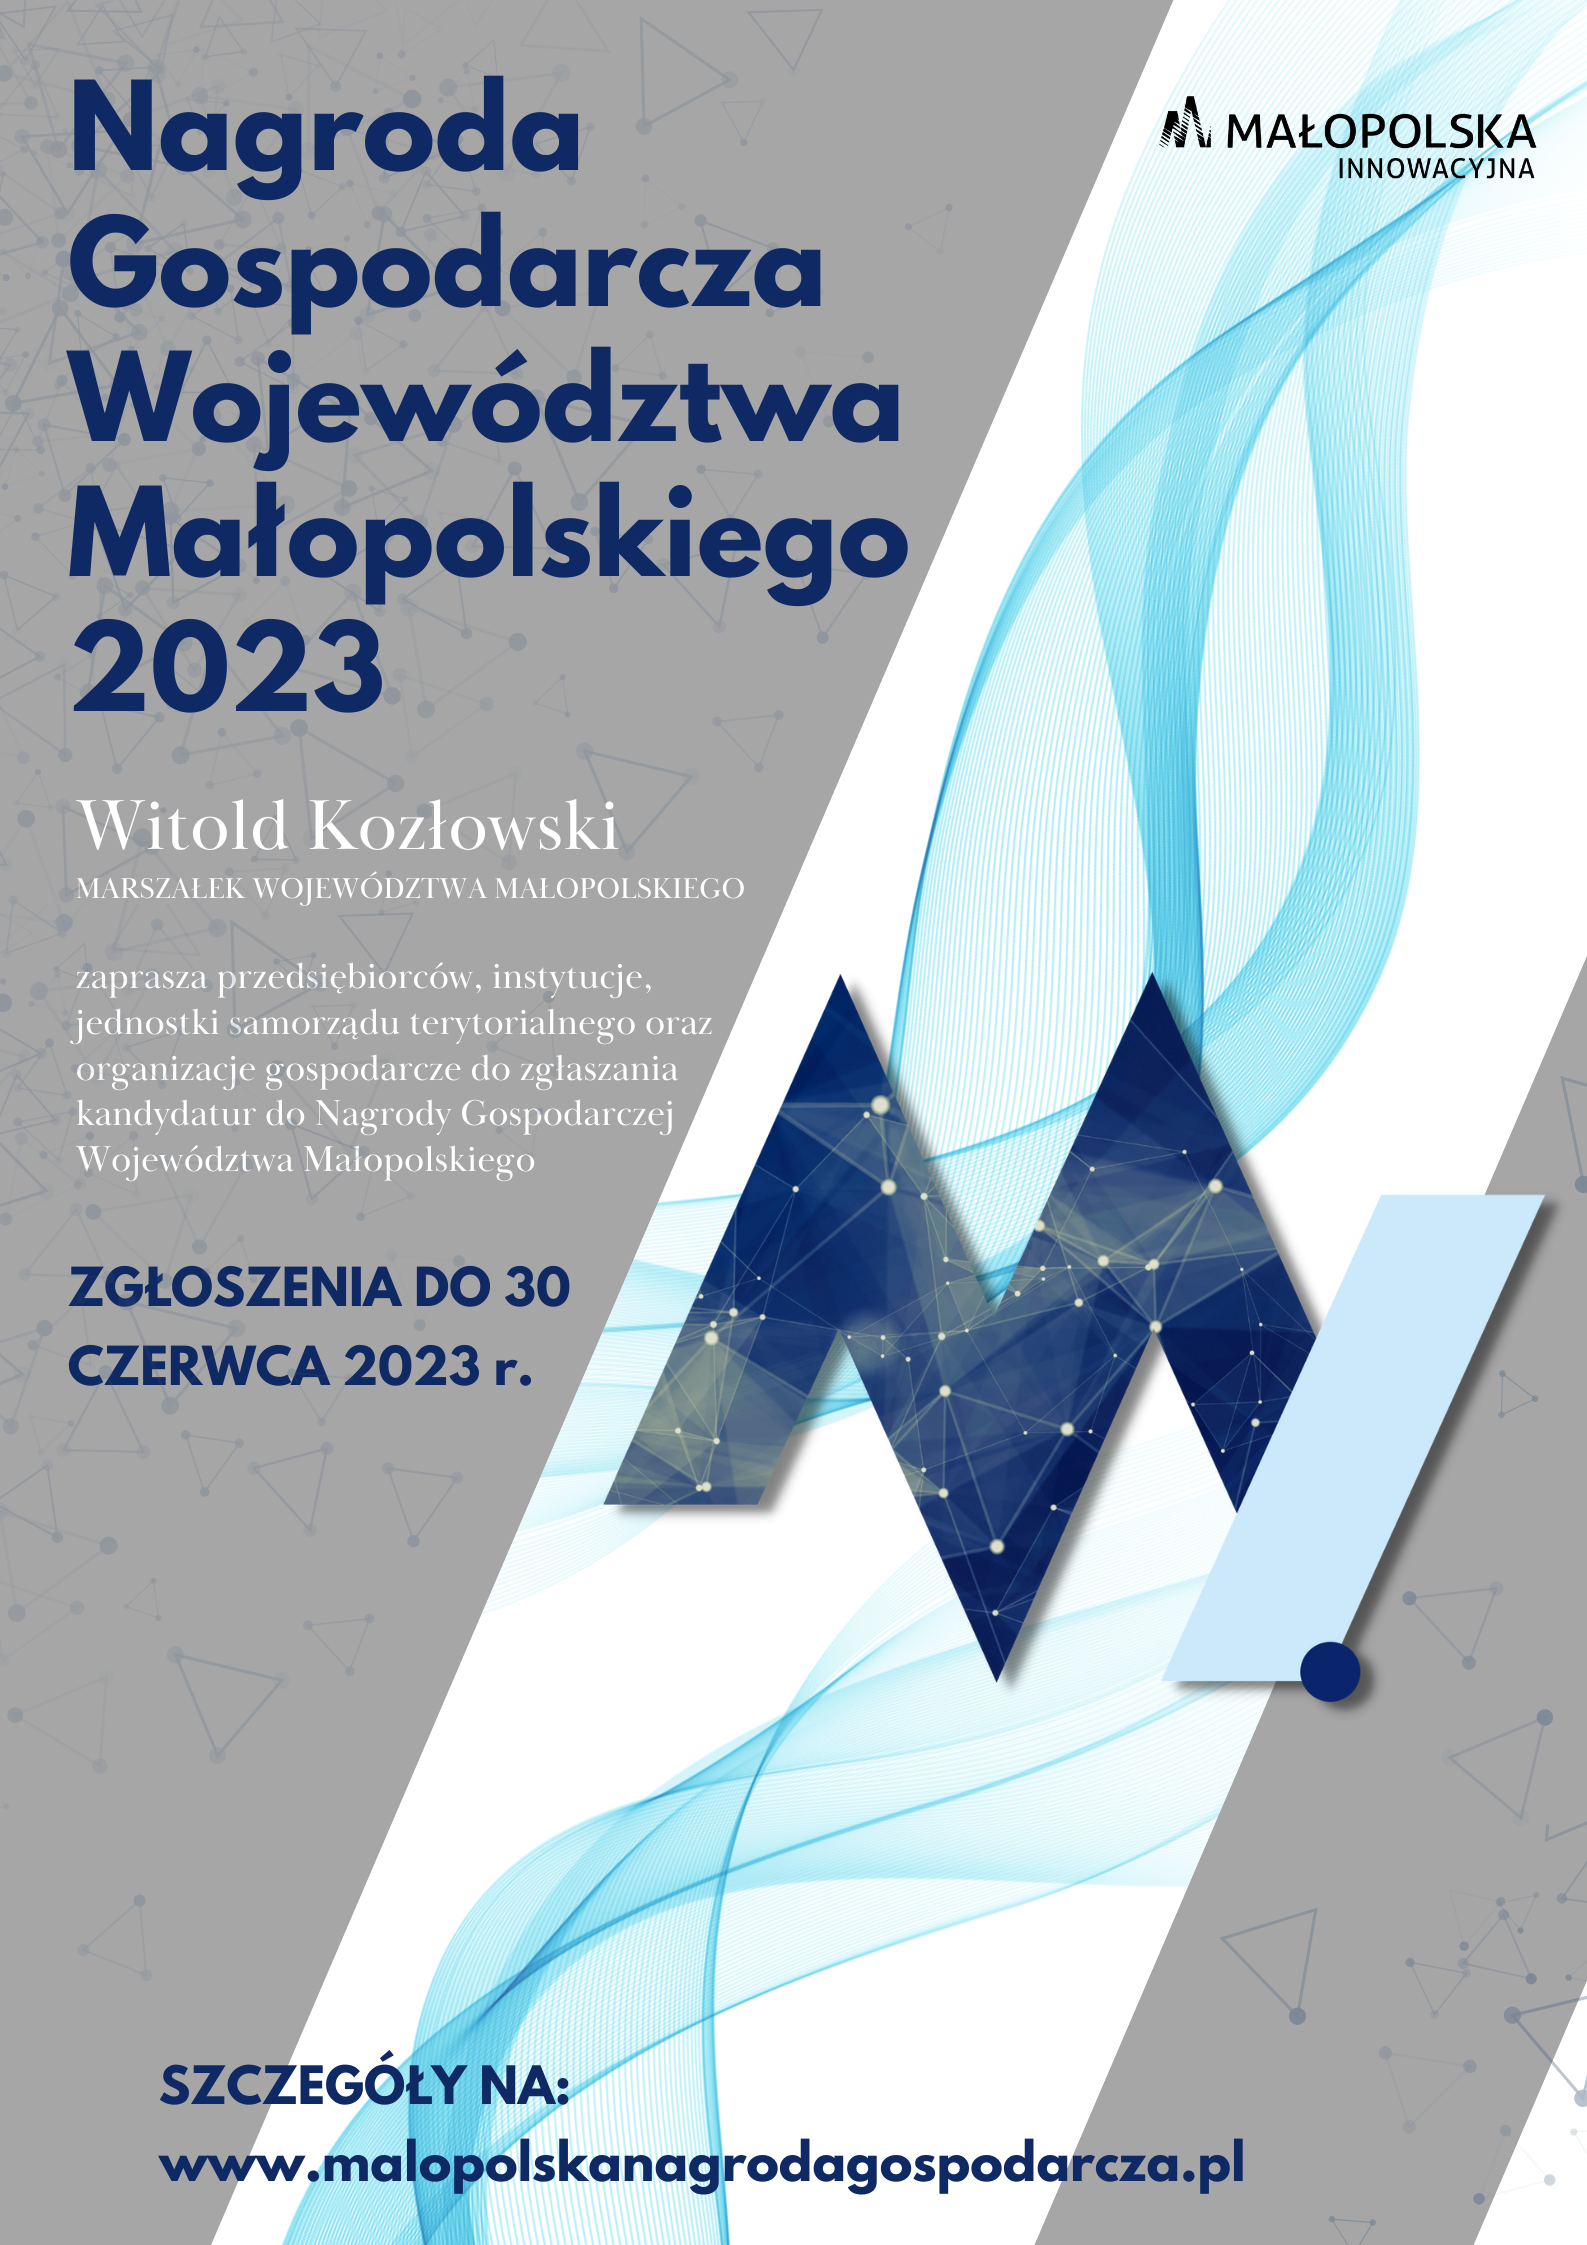 Nagroda Gospodarcza Województwa Małopolskiego 2023 - plakat